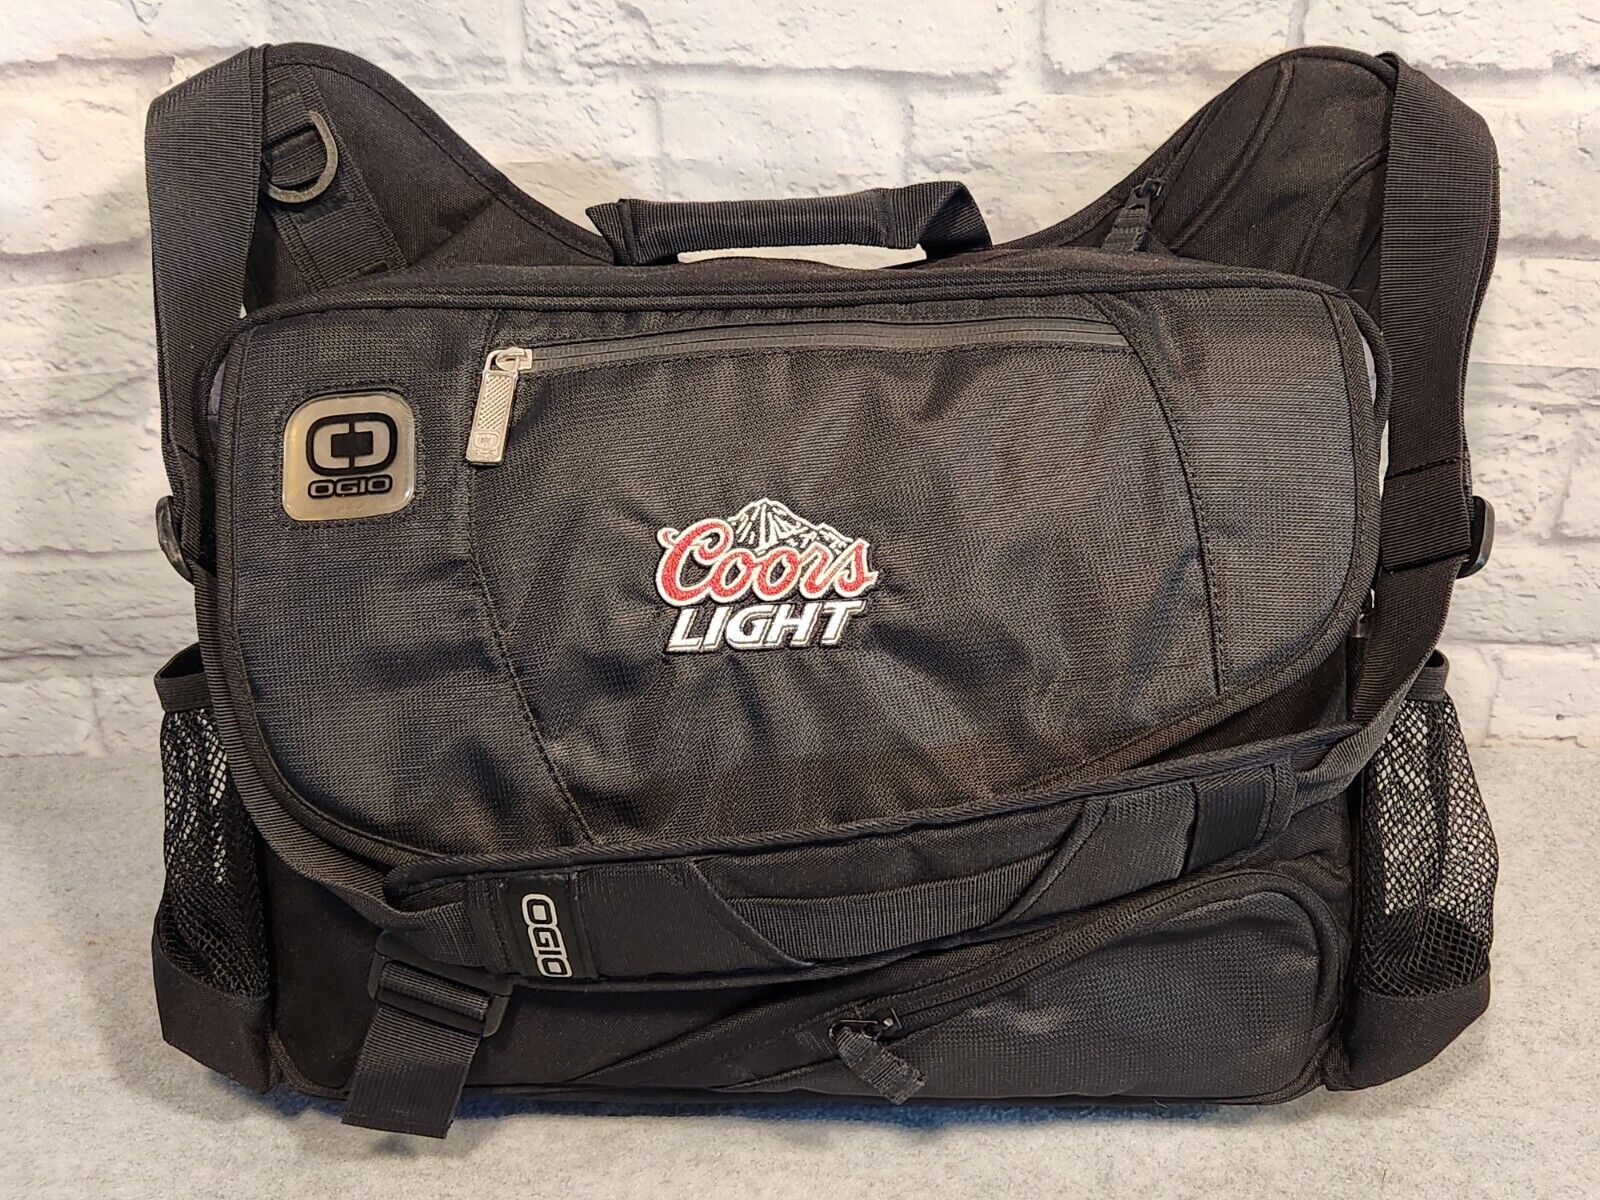 OGIO Street Hip Hop Coors Light Messenger Bag Black Padded Laptop